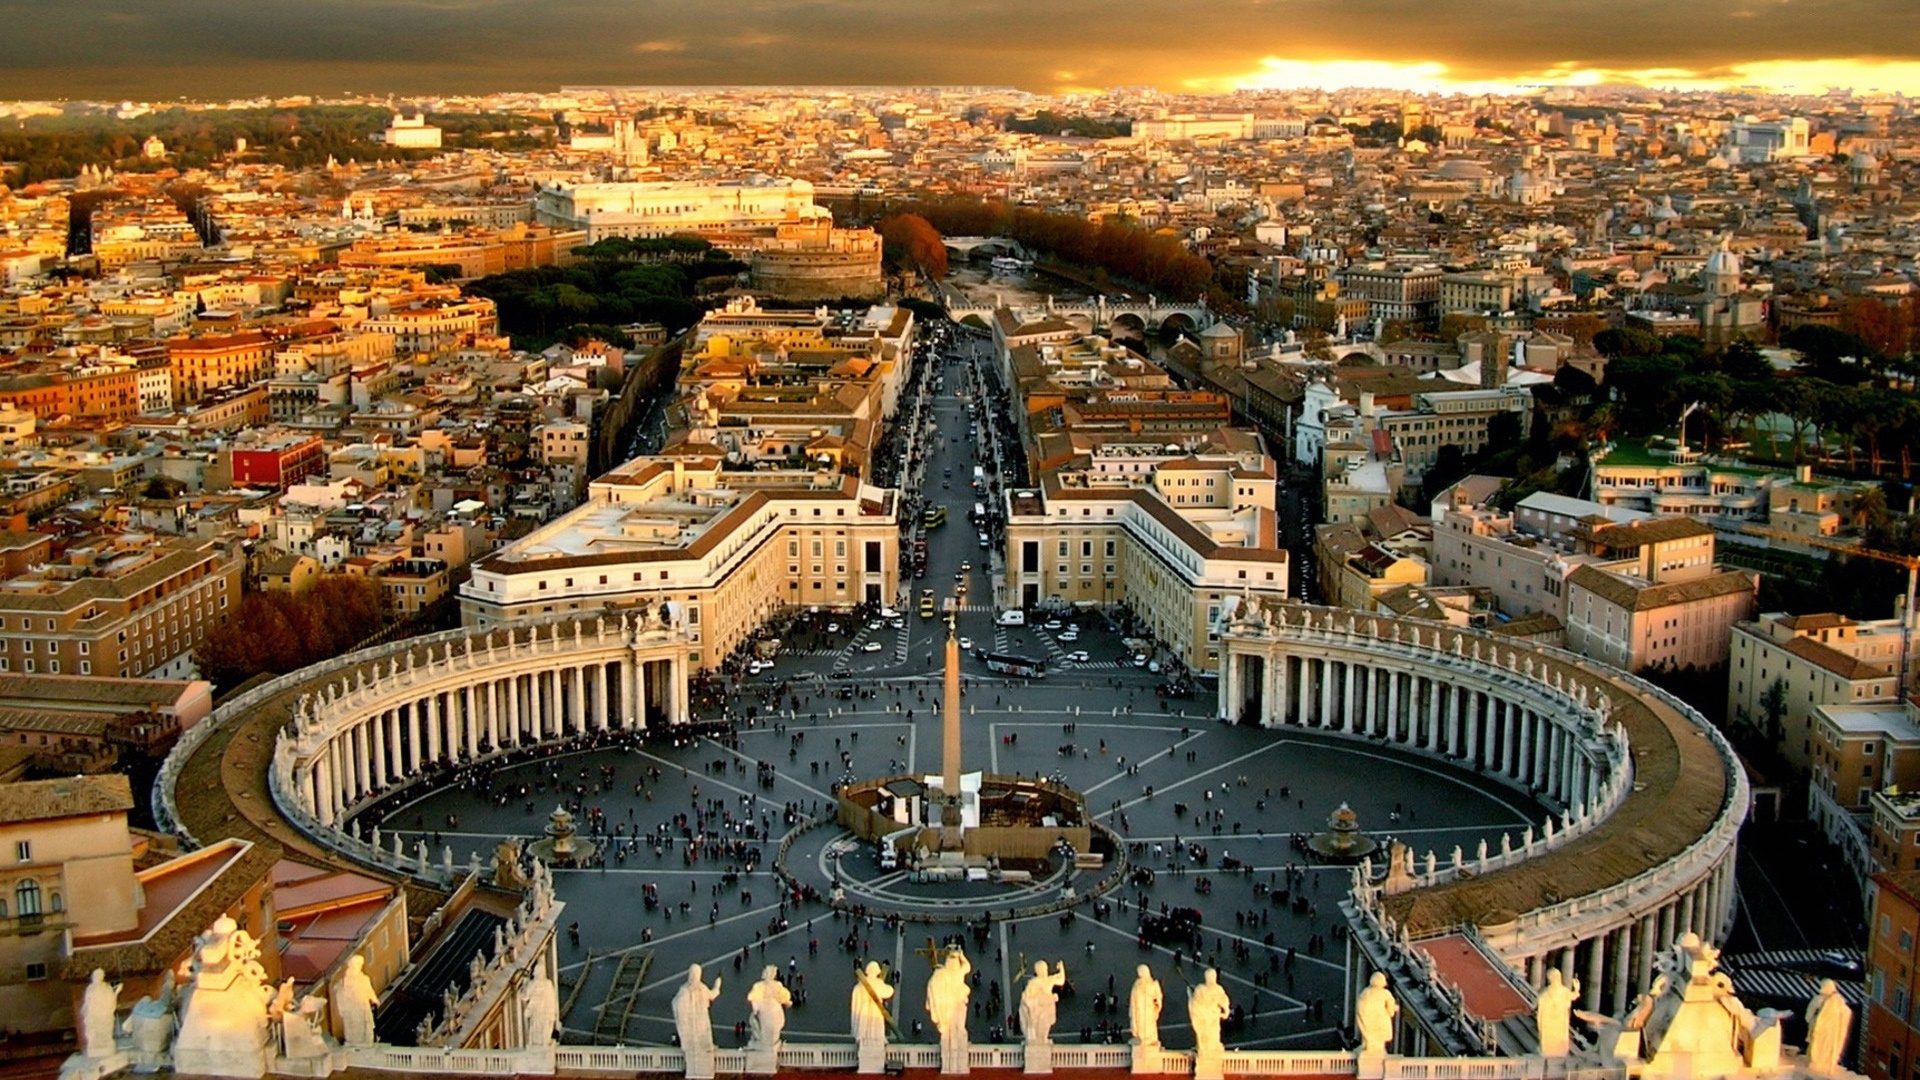 Una spettacolare veduta di Piazza San Pietro dall'alto